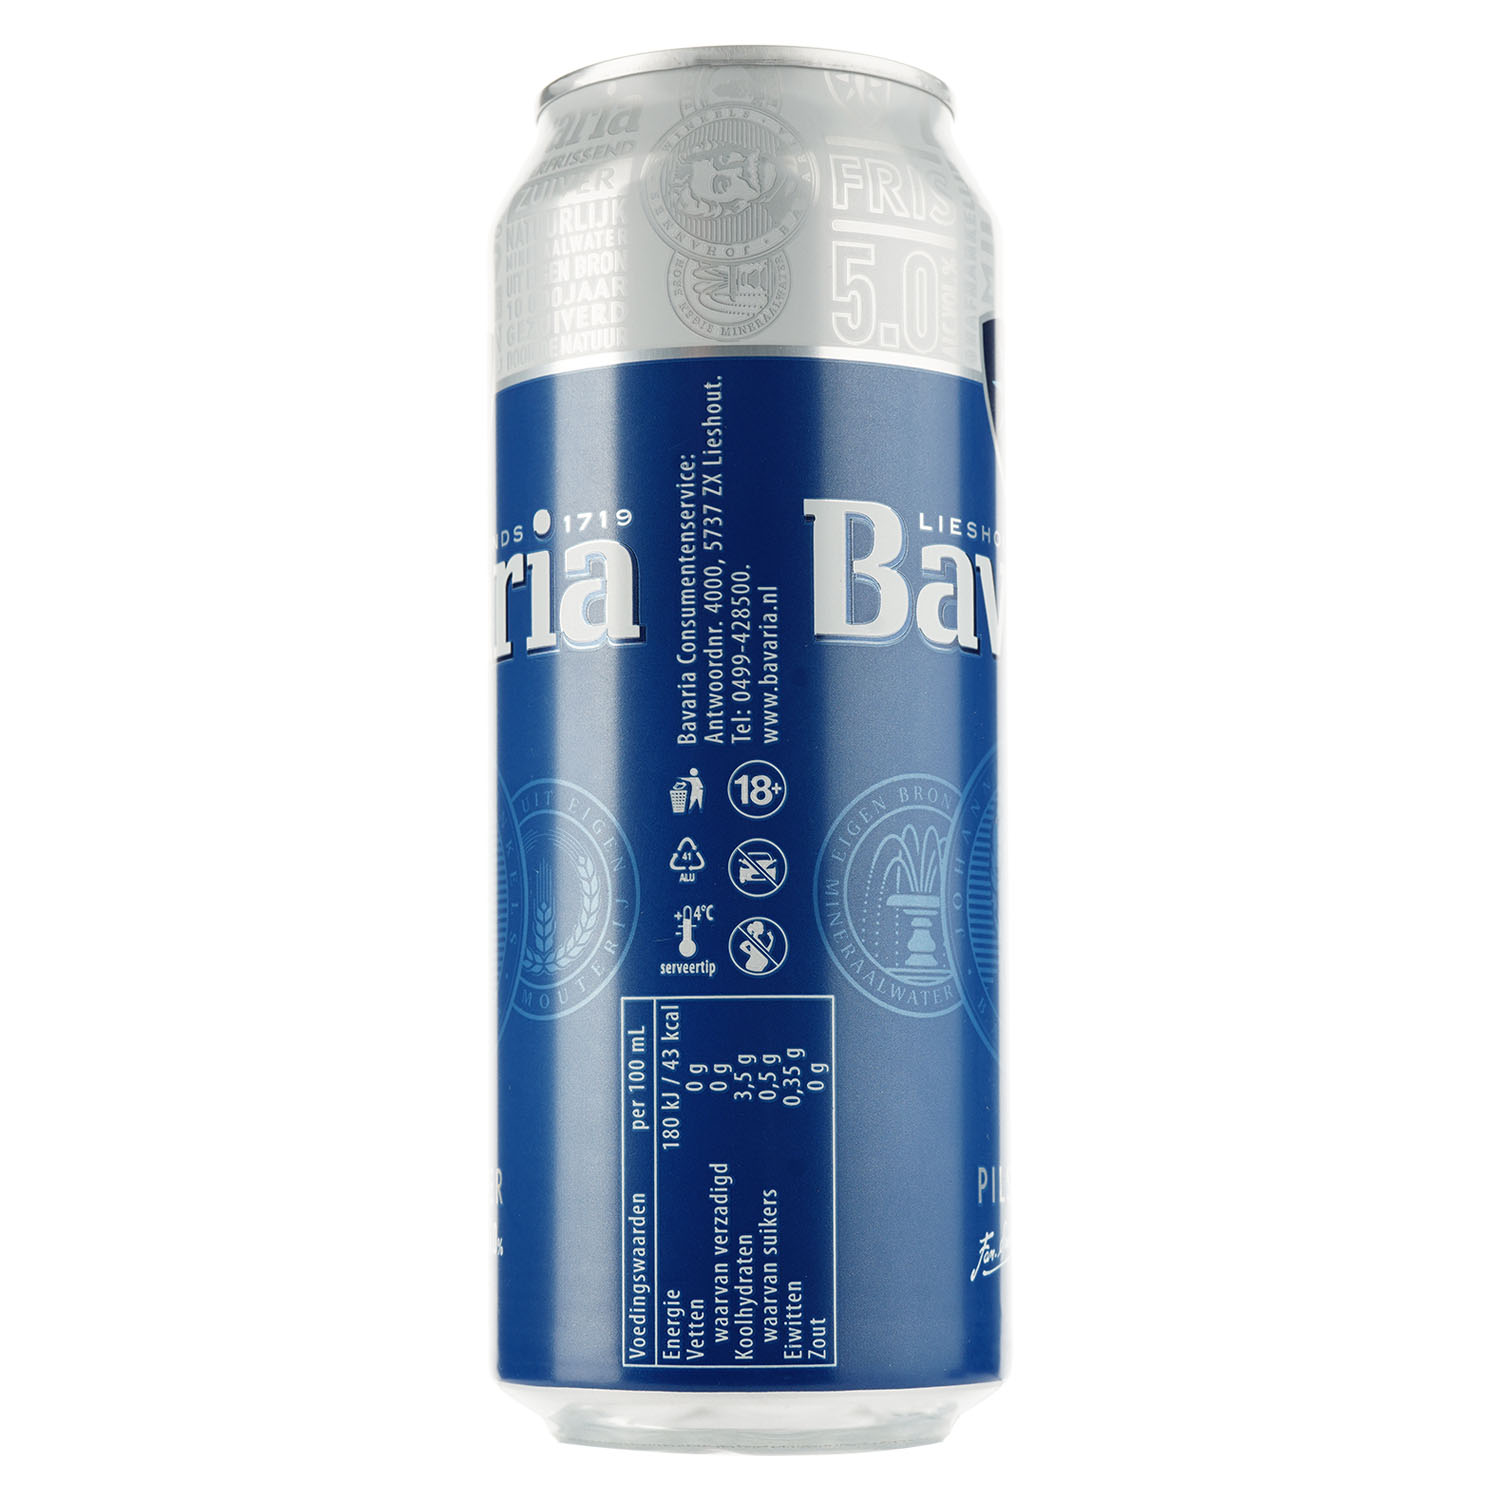 Пиво Bavaria, світле, фільтроване, 5%, з/б, 0,5 л - фото 2